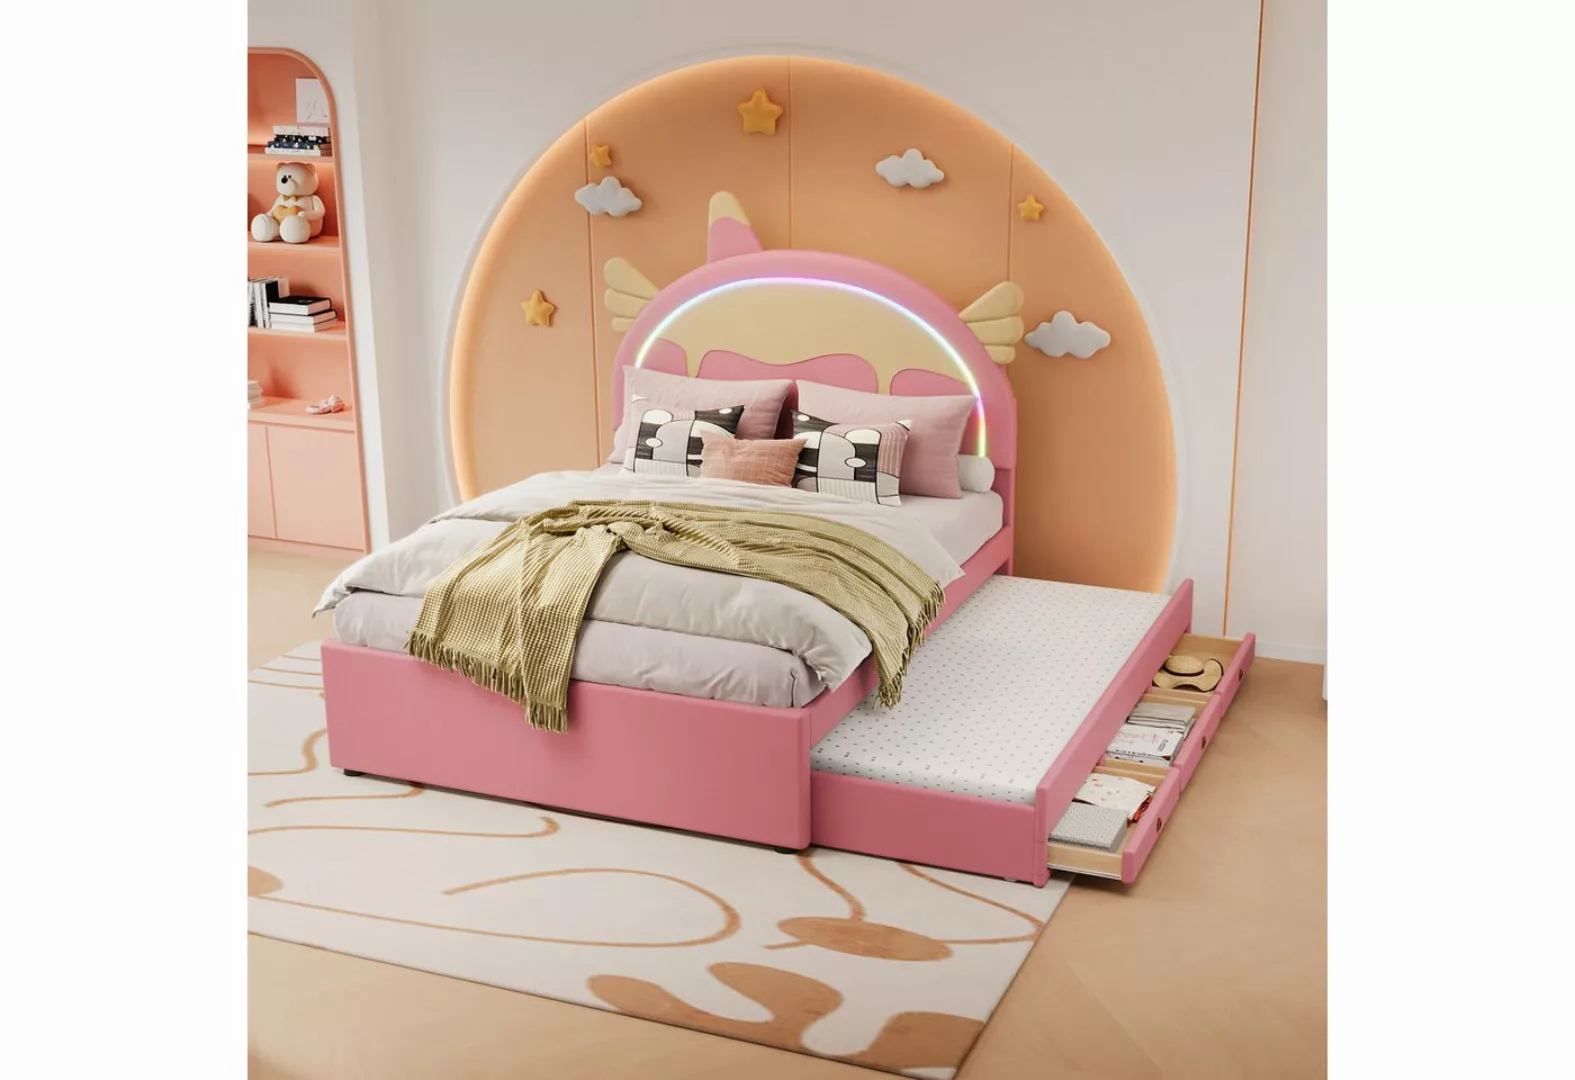 MODFU Kinderbett Einhornform, ausgestattet mit ausziehbares rollbett, kunst günstig online kaufen